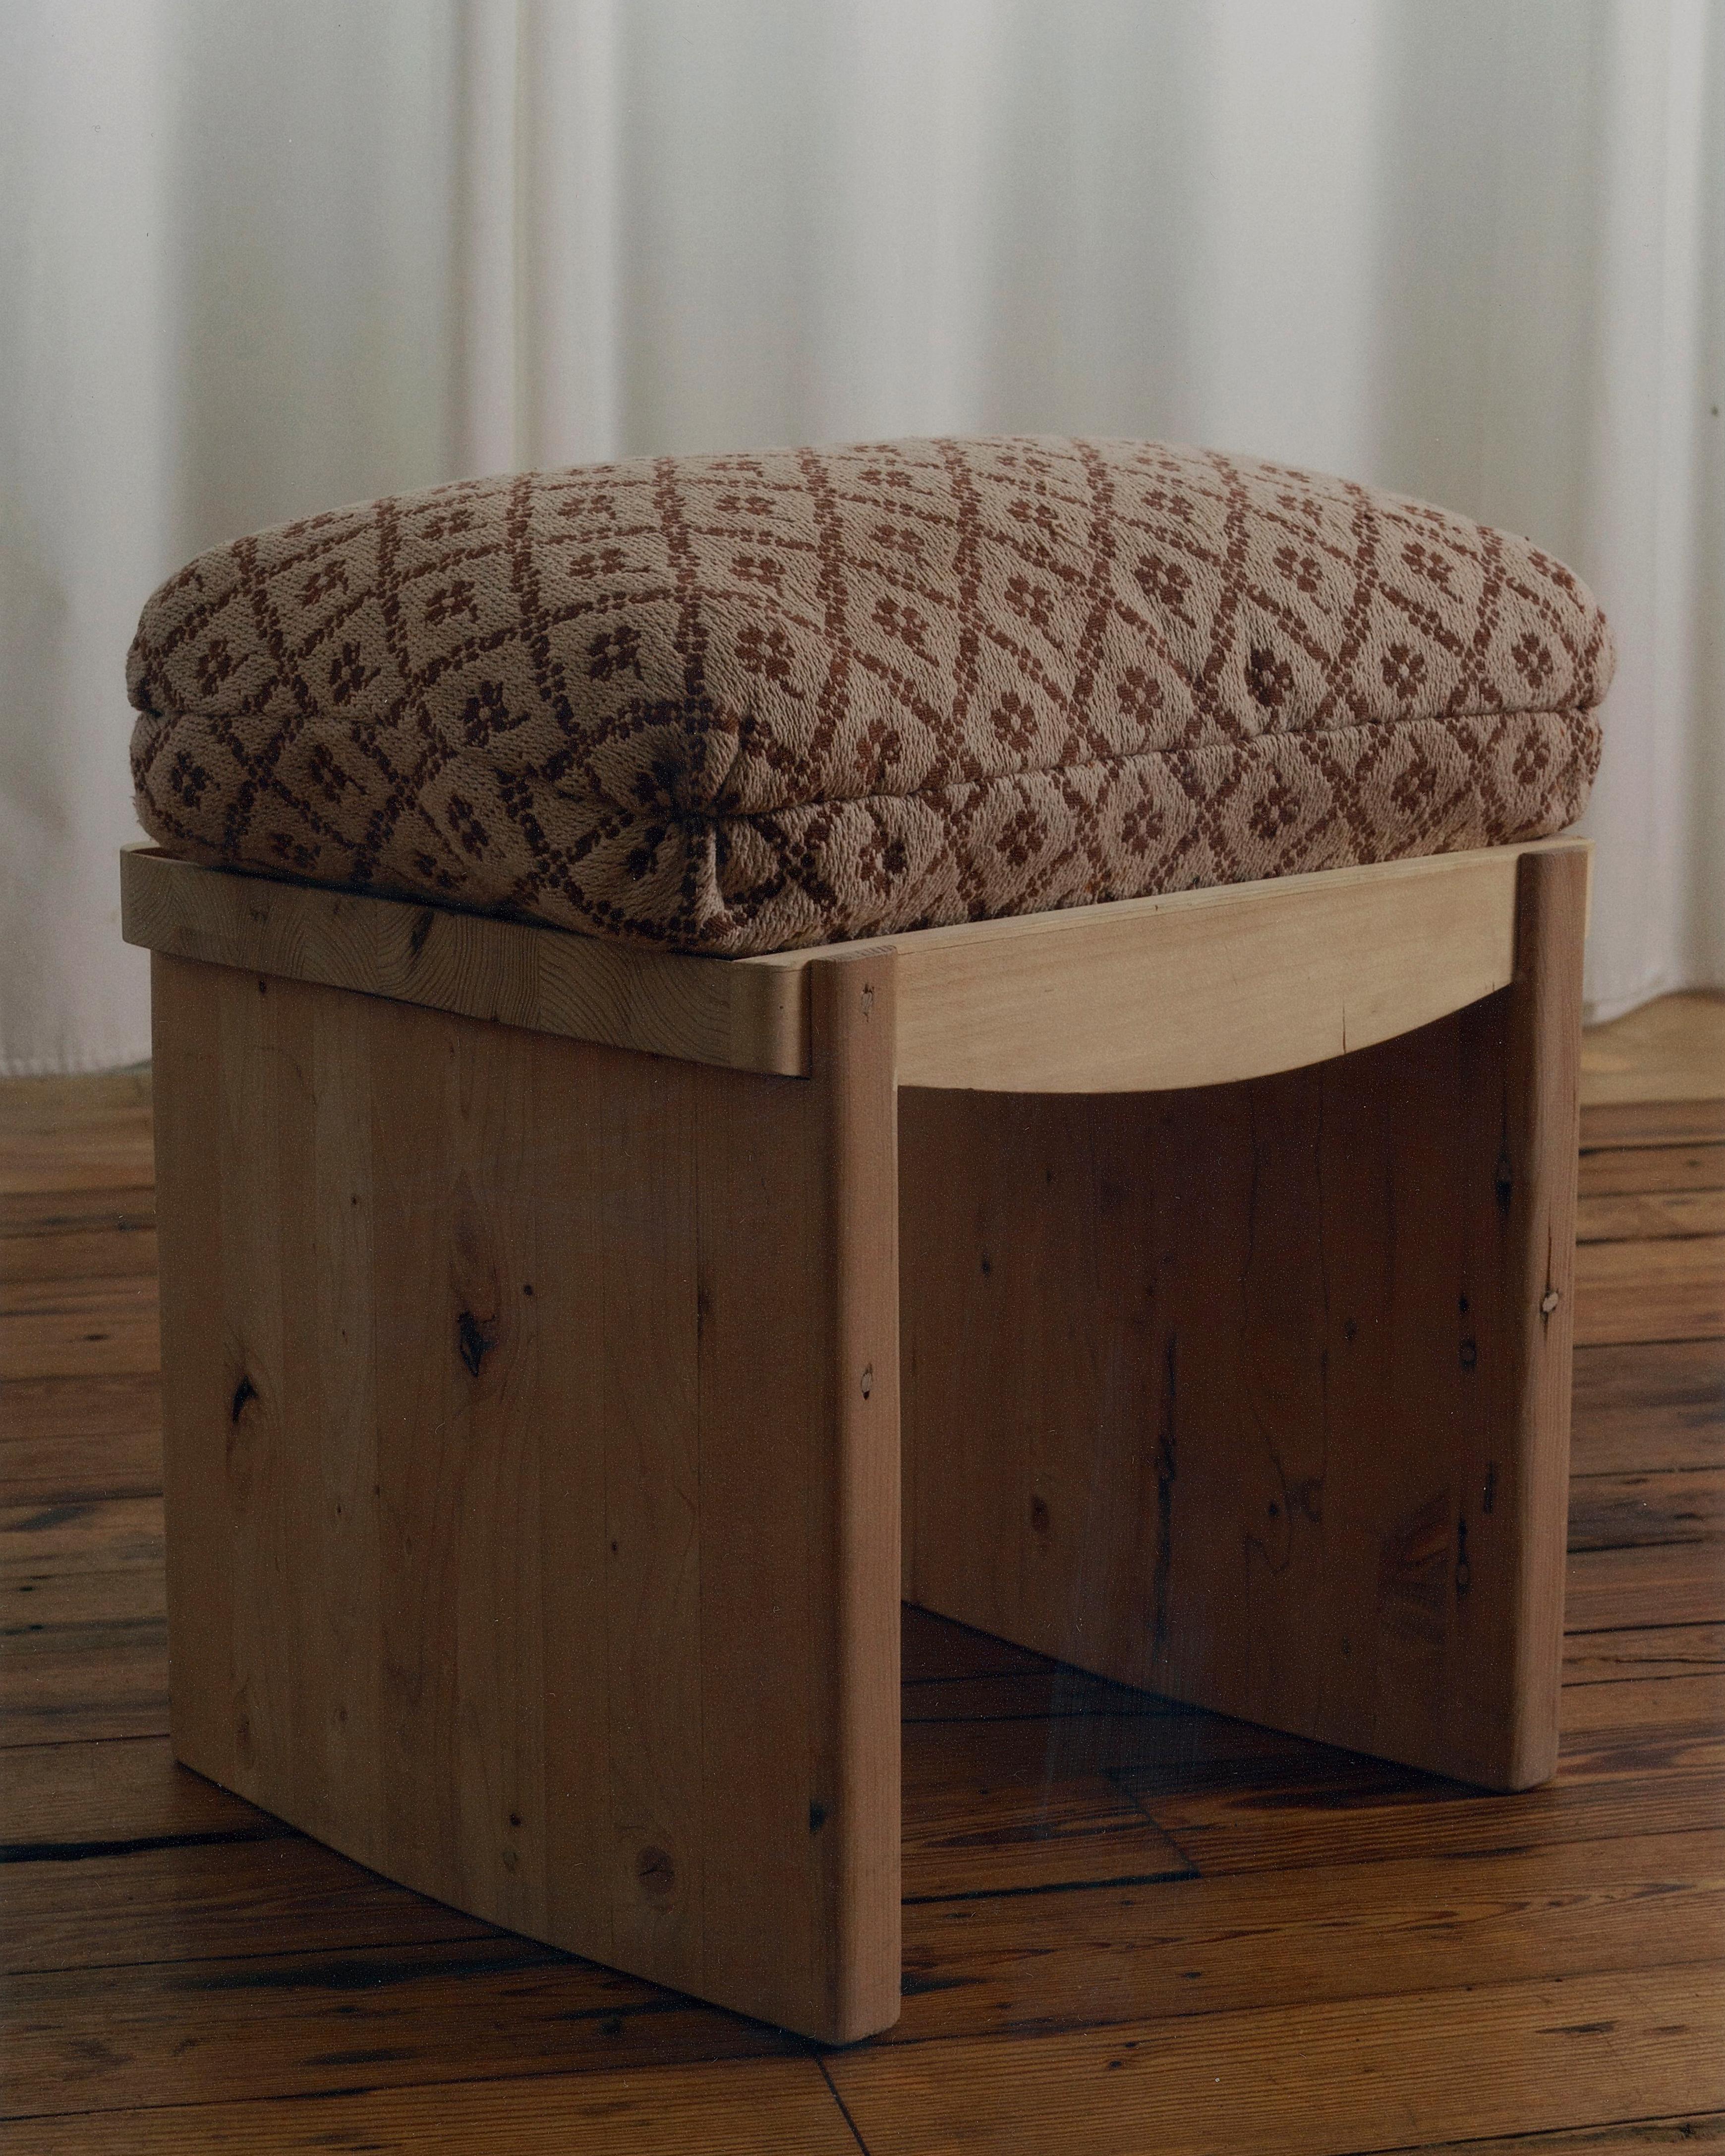 Fabriqué entièrement en bois massif, chaque élément est façonné et fini à la main. L'assise sculptée présente une légère courbe intérieure, avec un coussin d'angle turc placé dans le renfoncement. 
Disponible en chêne et noyer rustiques et en tissu